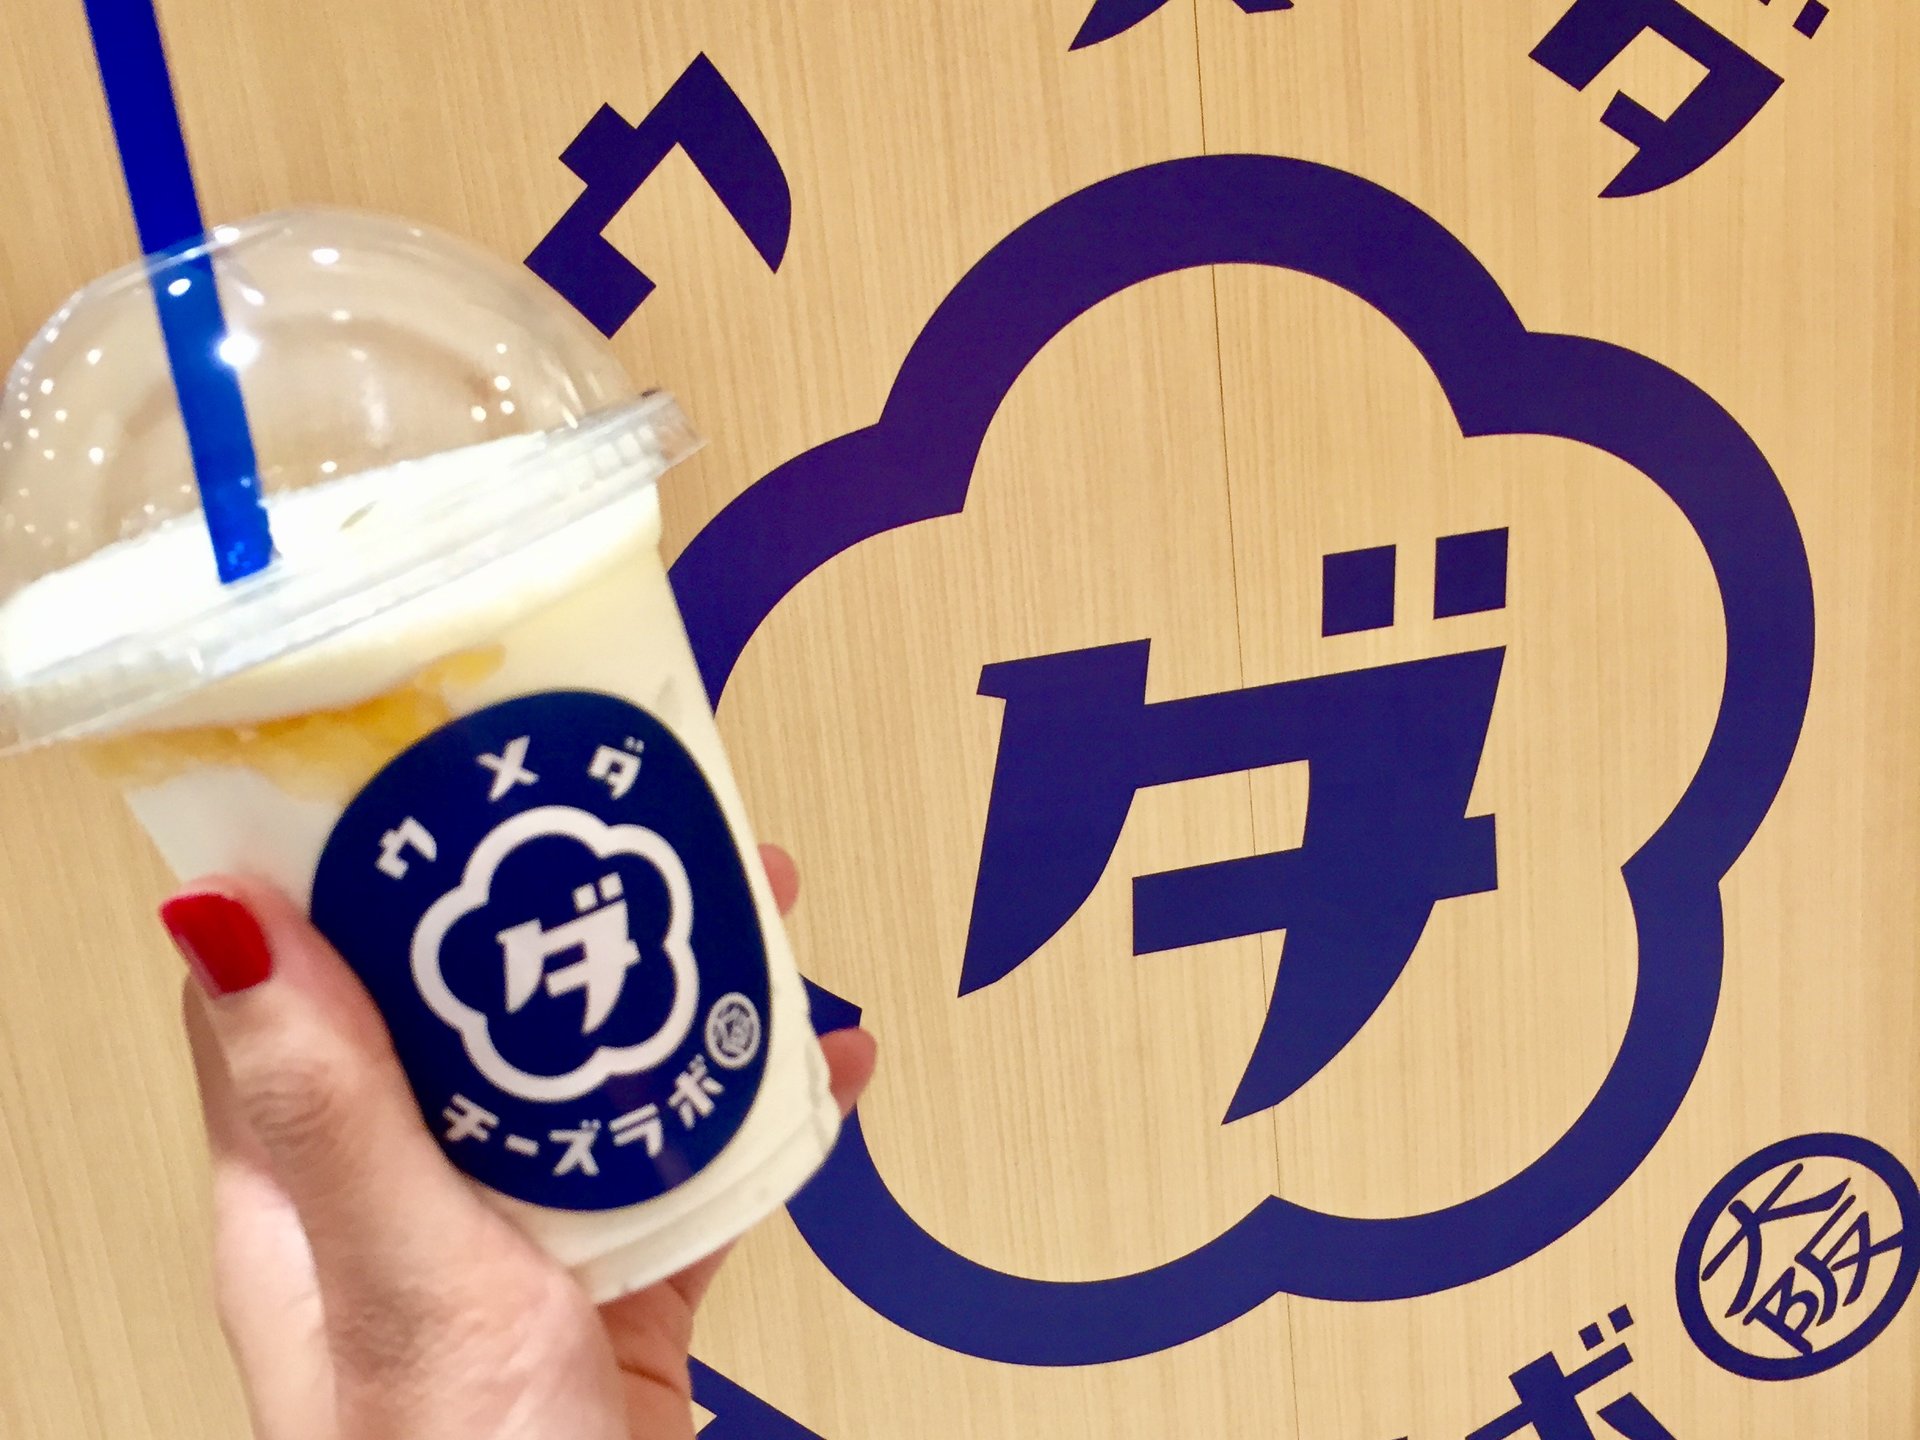 ウメダチーズラボが大丸梅田に新オープン！ここでしか買えない大阪土産、並び時間や売り切れ状況をレポート